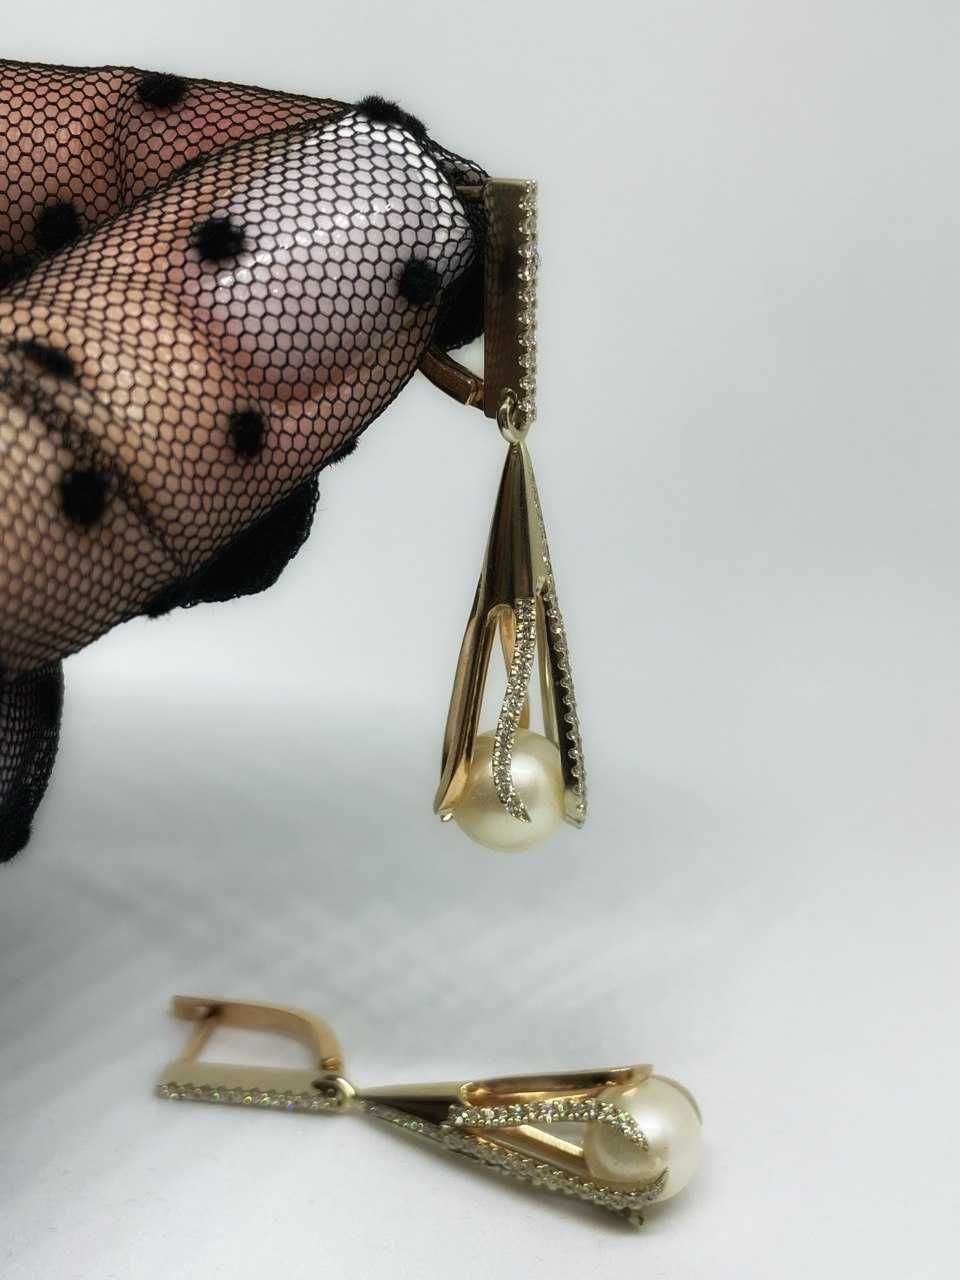 Золотые серьги с бриллиантами